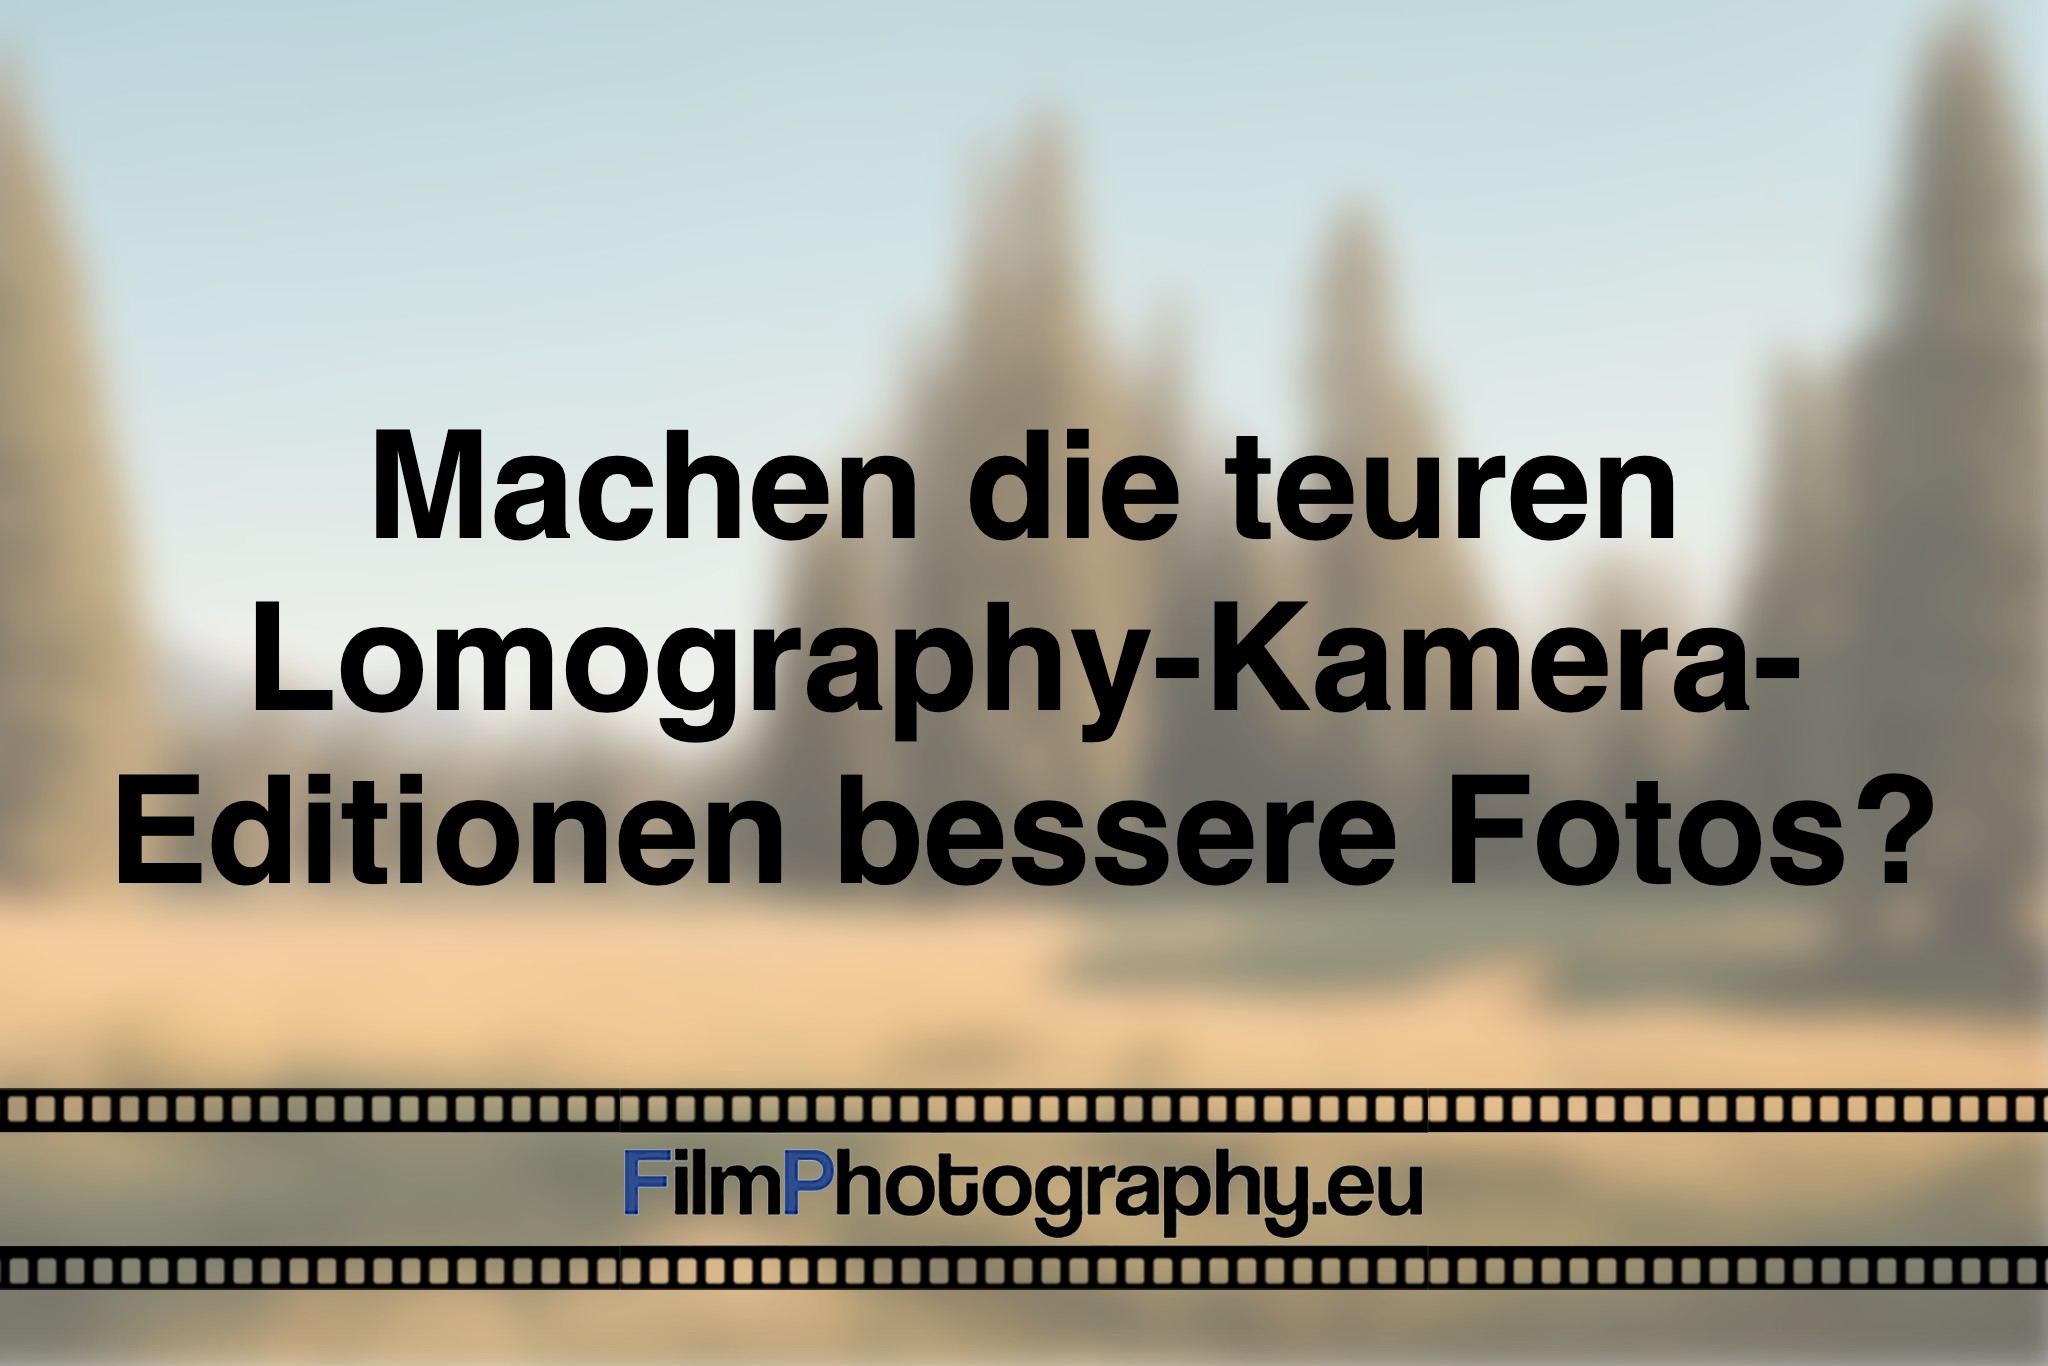 machen-die-teuren-lomography-kamera-editionen-bessere-fotos-photo-bnv